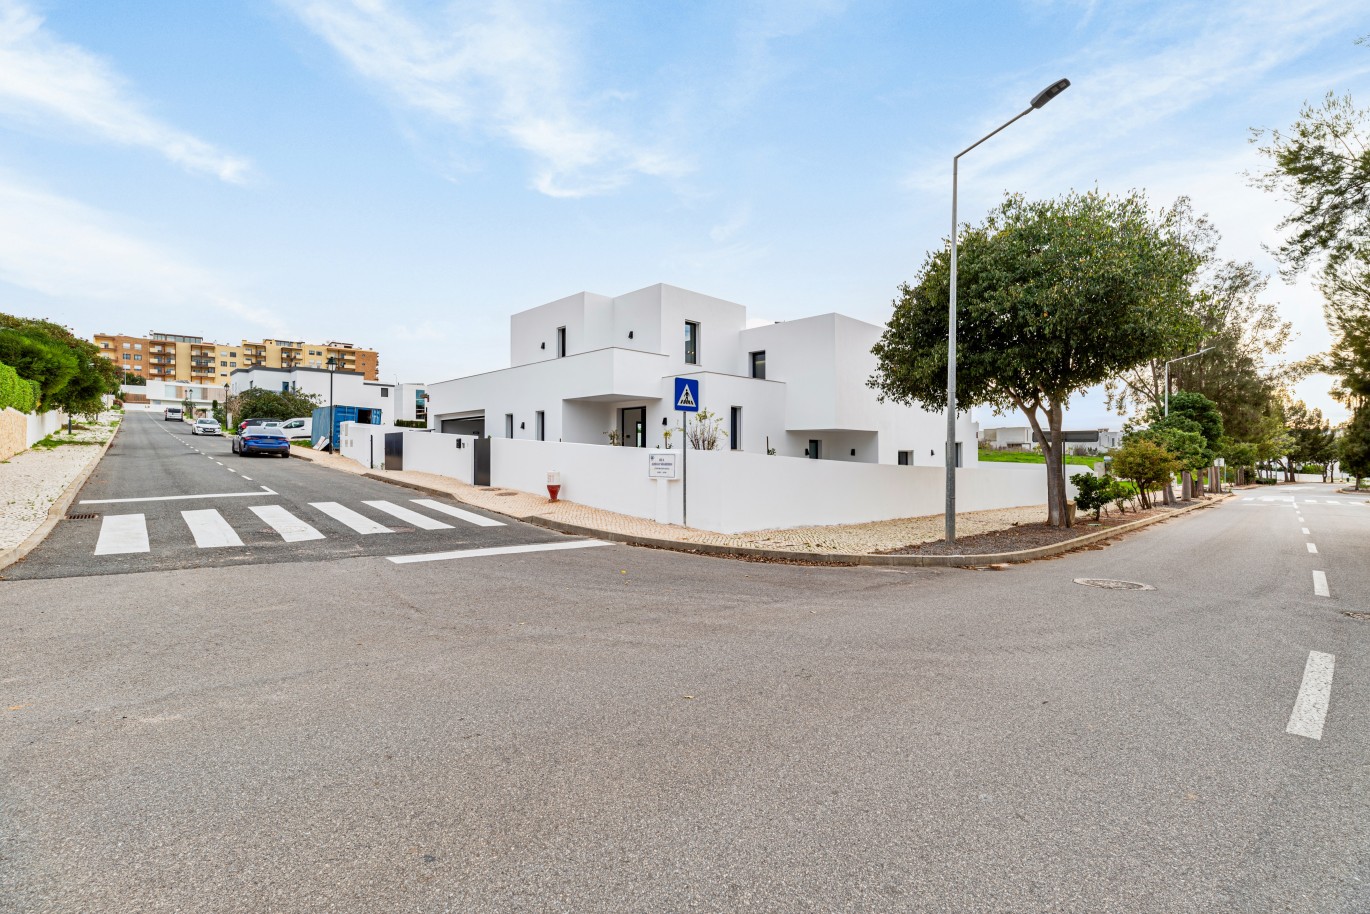 Moradia V4, com piscina, para venda em Porto de Mós, Lagos, Algarve_243635